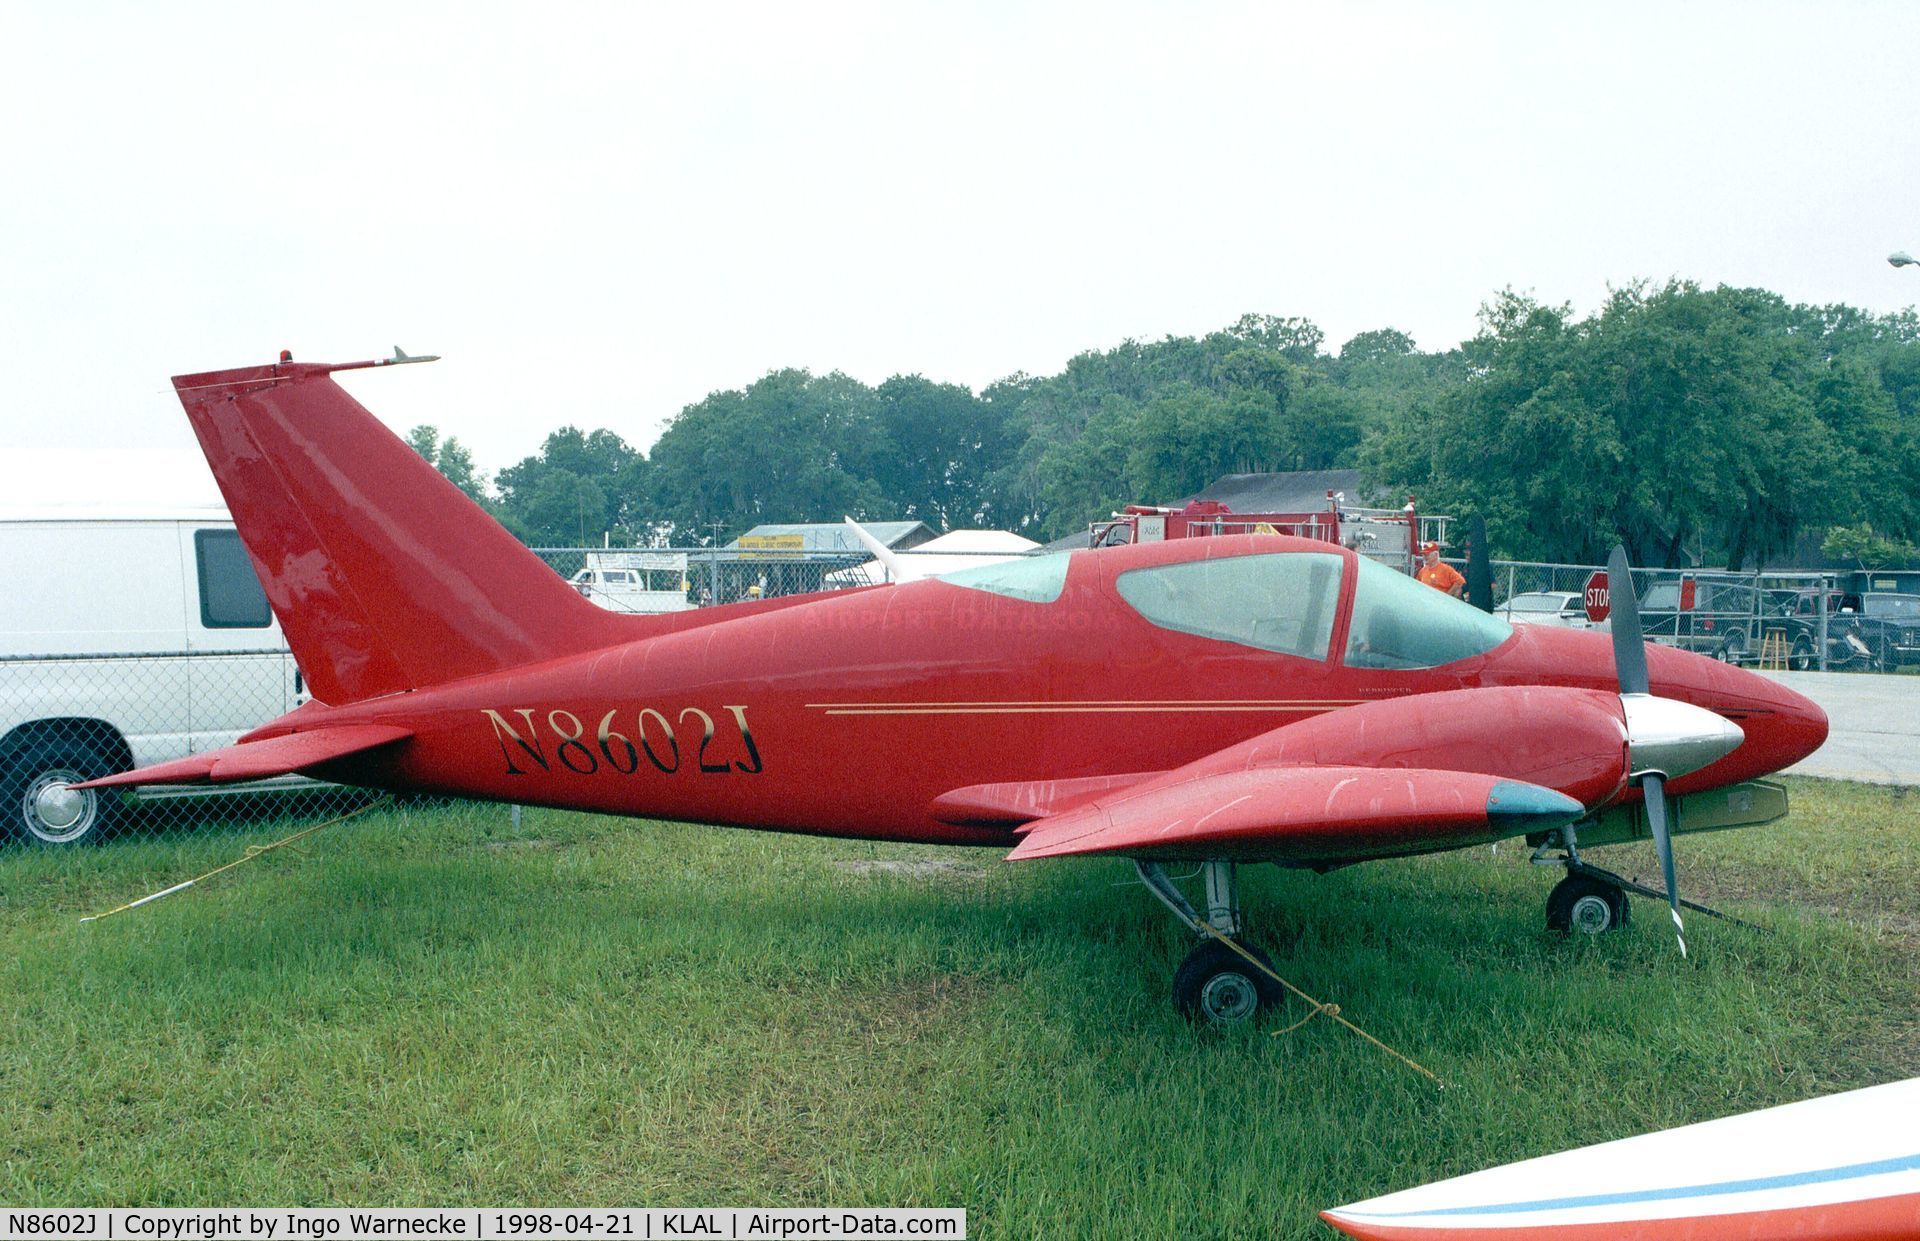 N8602J, 1981 Wing D-1 Derringer C/N 009, Wing D-1 Derringer at Sun 'n Fun 1998, Lakeland FL